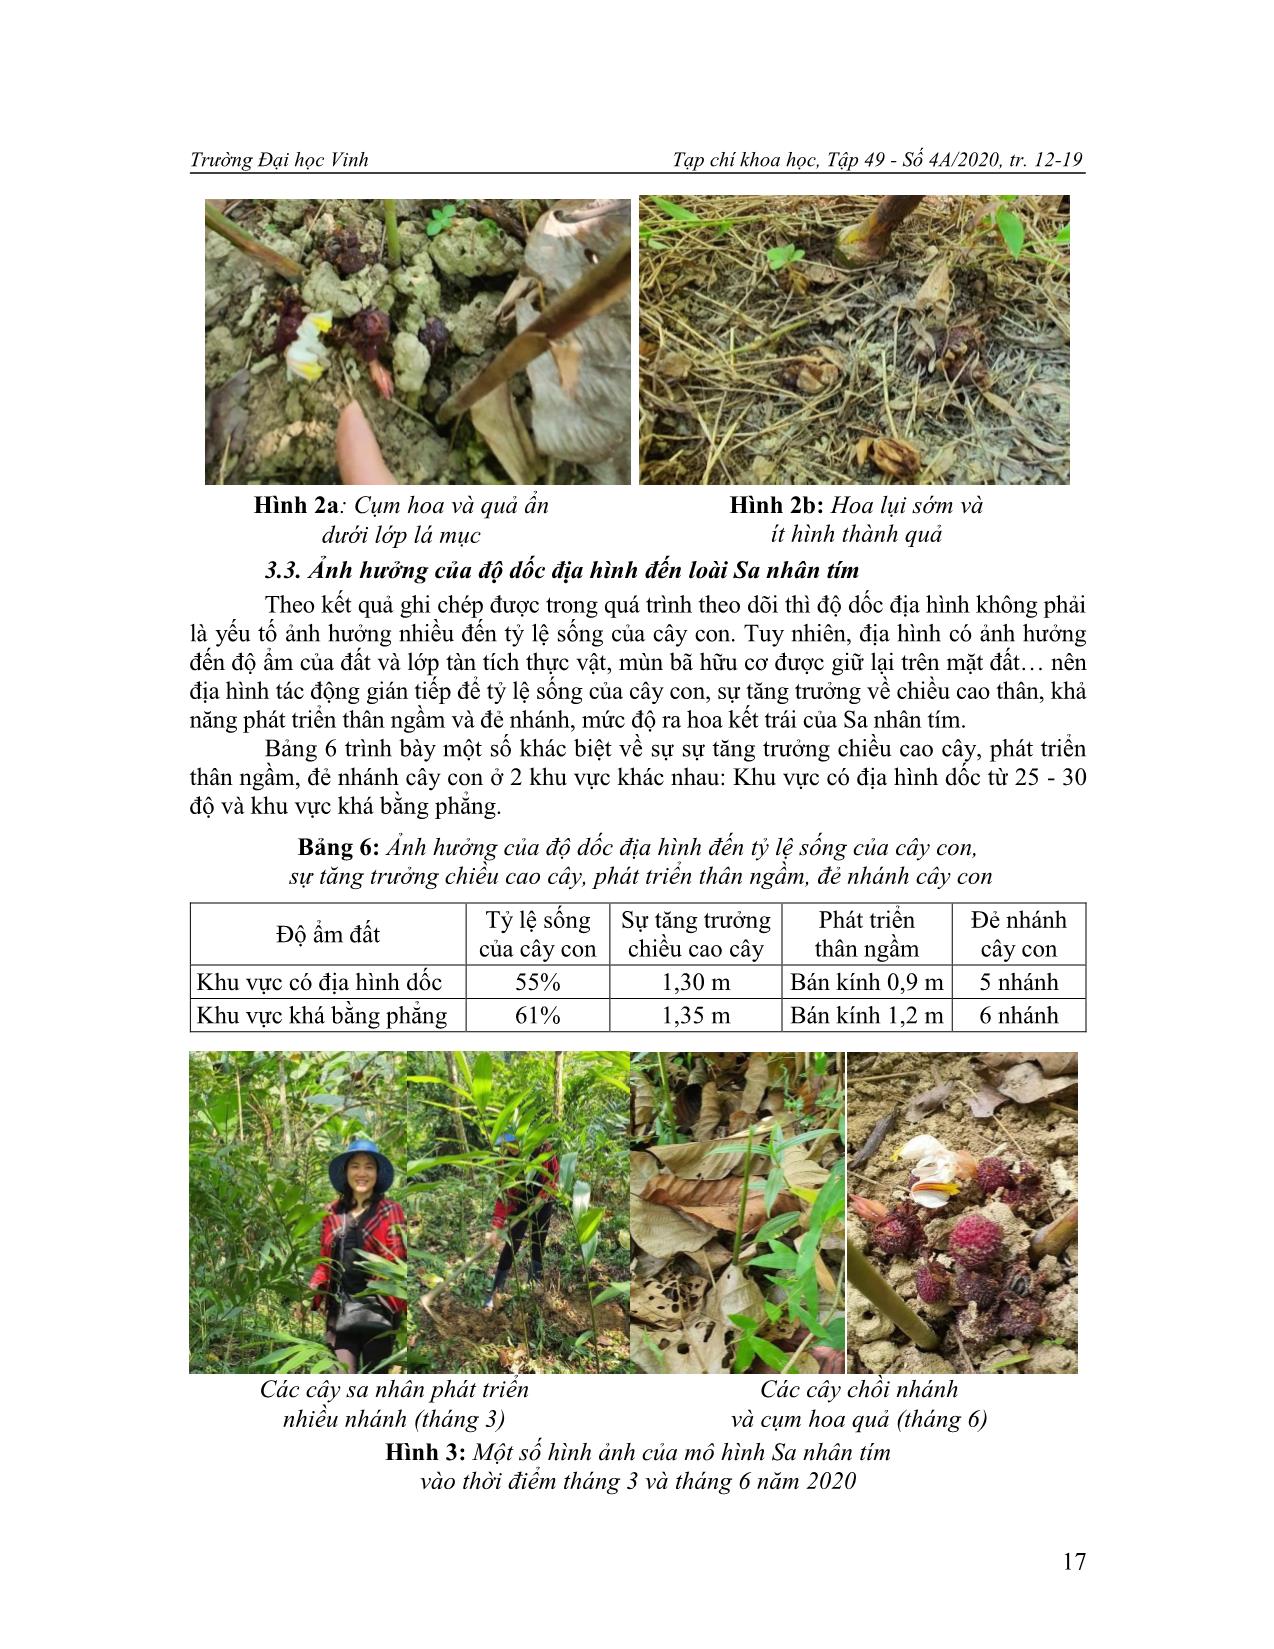 Nghiên cứu gây trồng cây sa nhân tím (Amomum longiligulare T. L.Wu) dưới tán rừng tự nhiên ở vùng miền núi Nghệ An trang 6